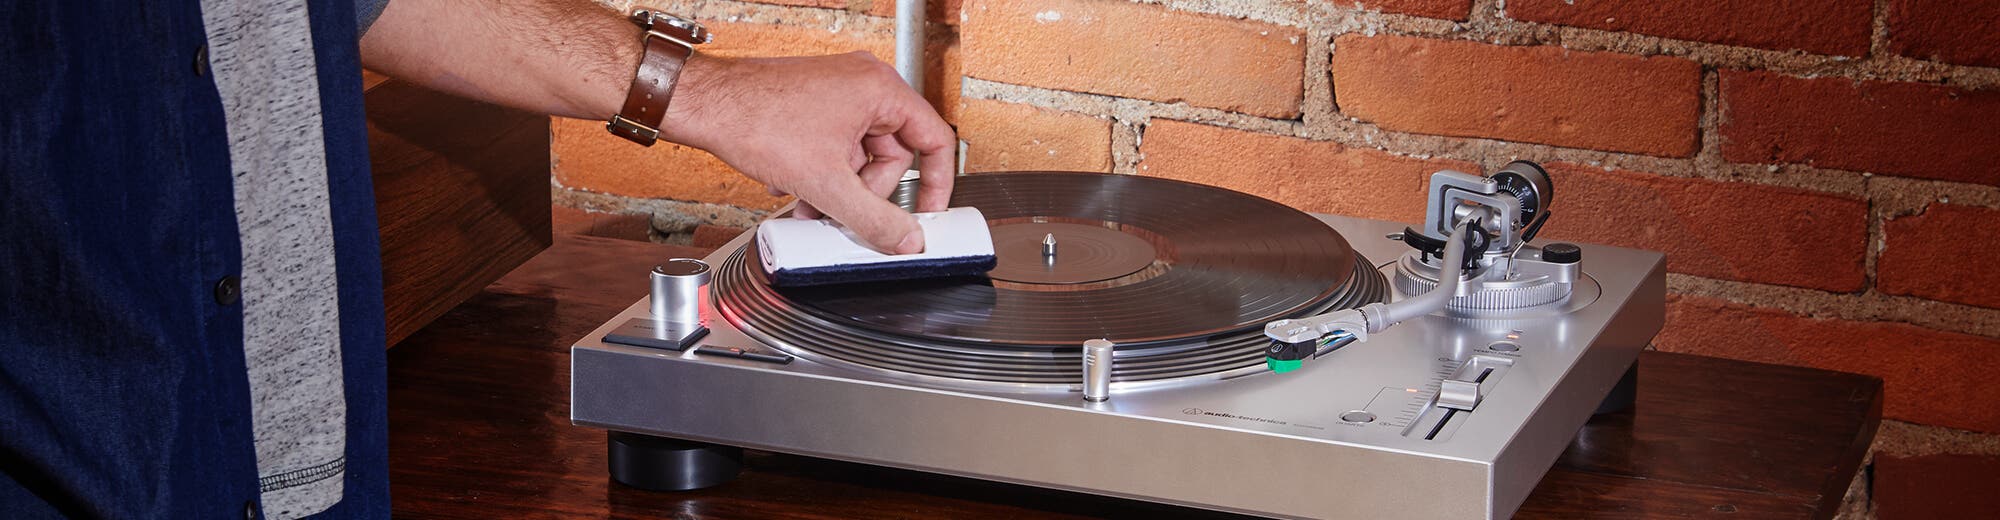 Thorens Kit de nettoyage vinyle - Accessoire audio - Achat & prix